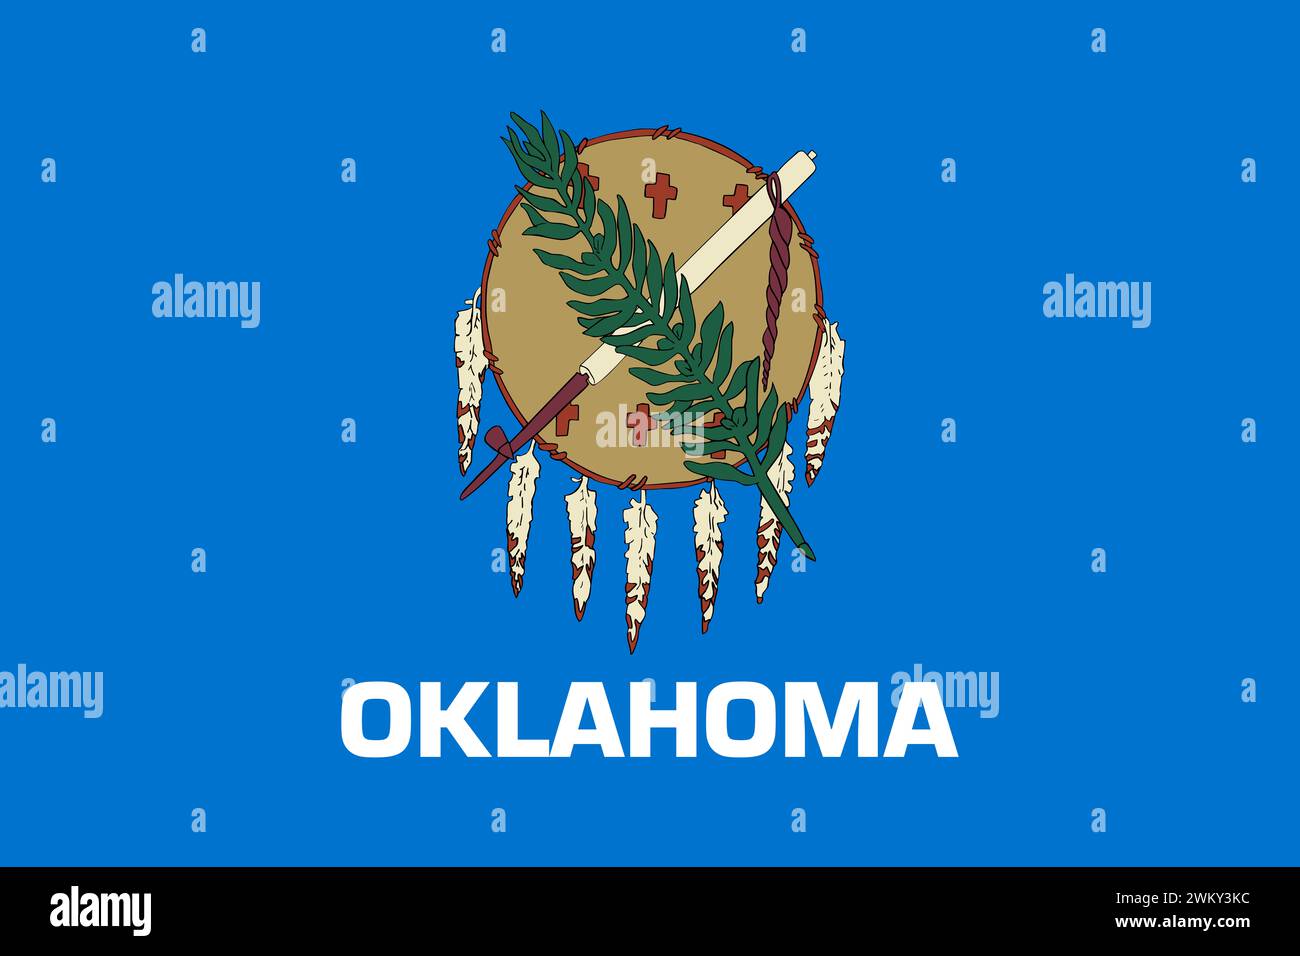 State flag of Oklahoma Stock Photo